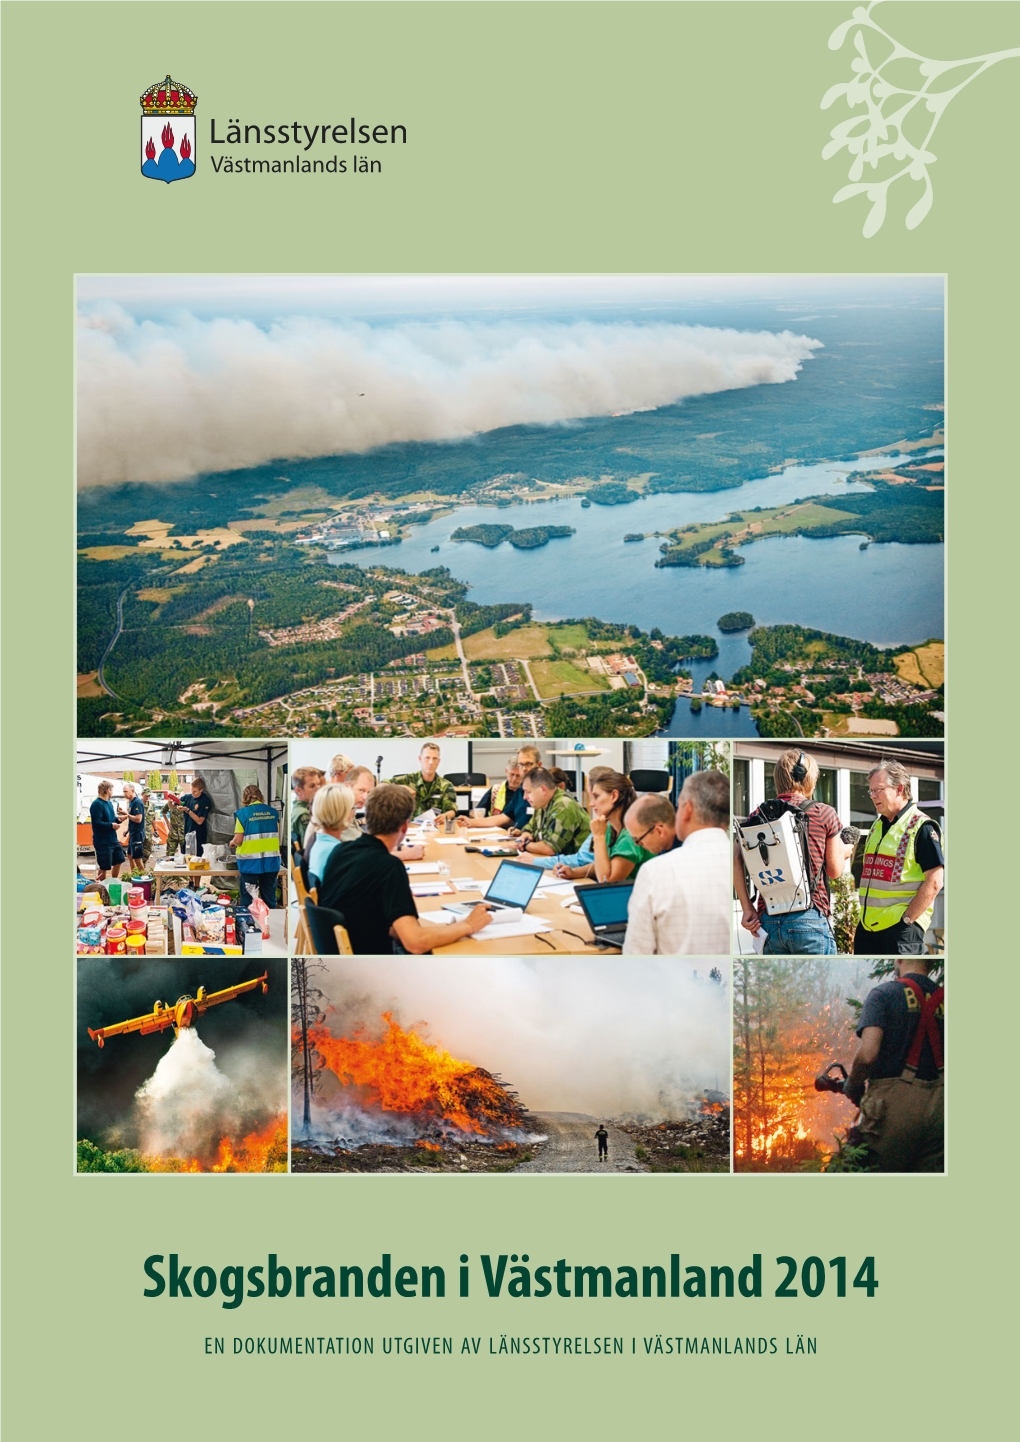 Skogsbranden I Västmanland 2014